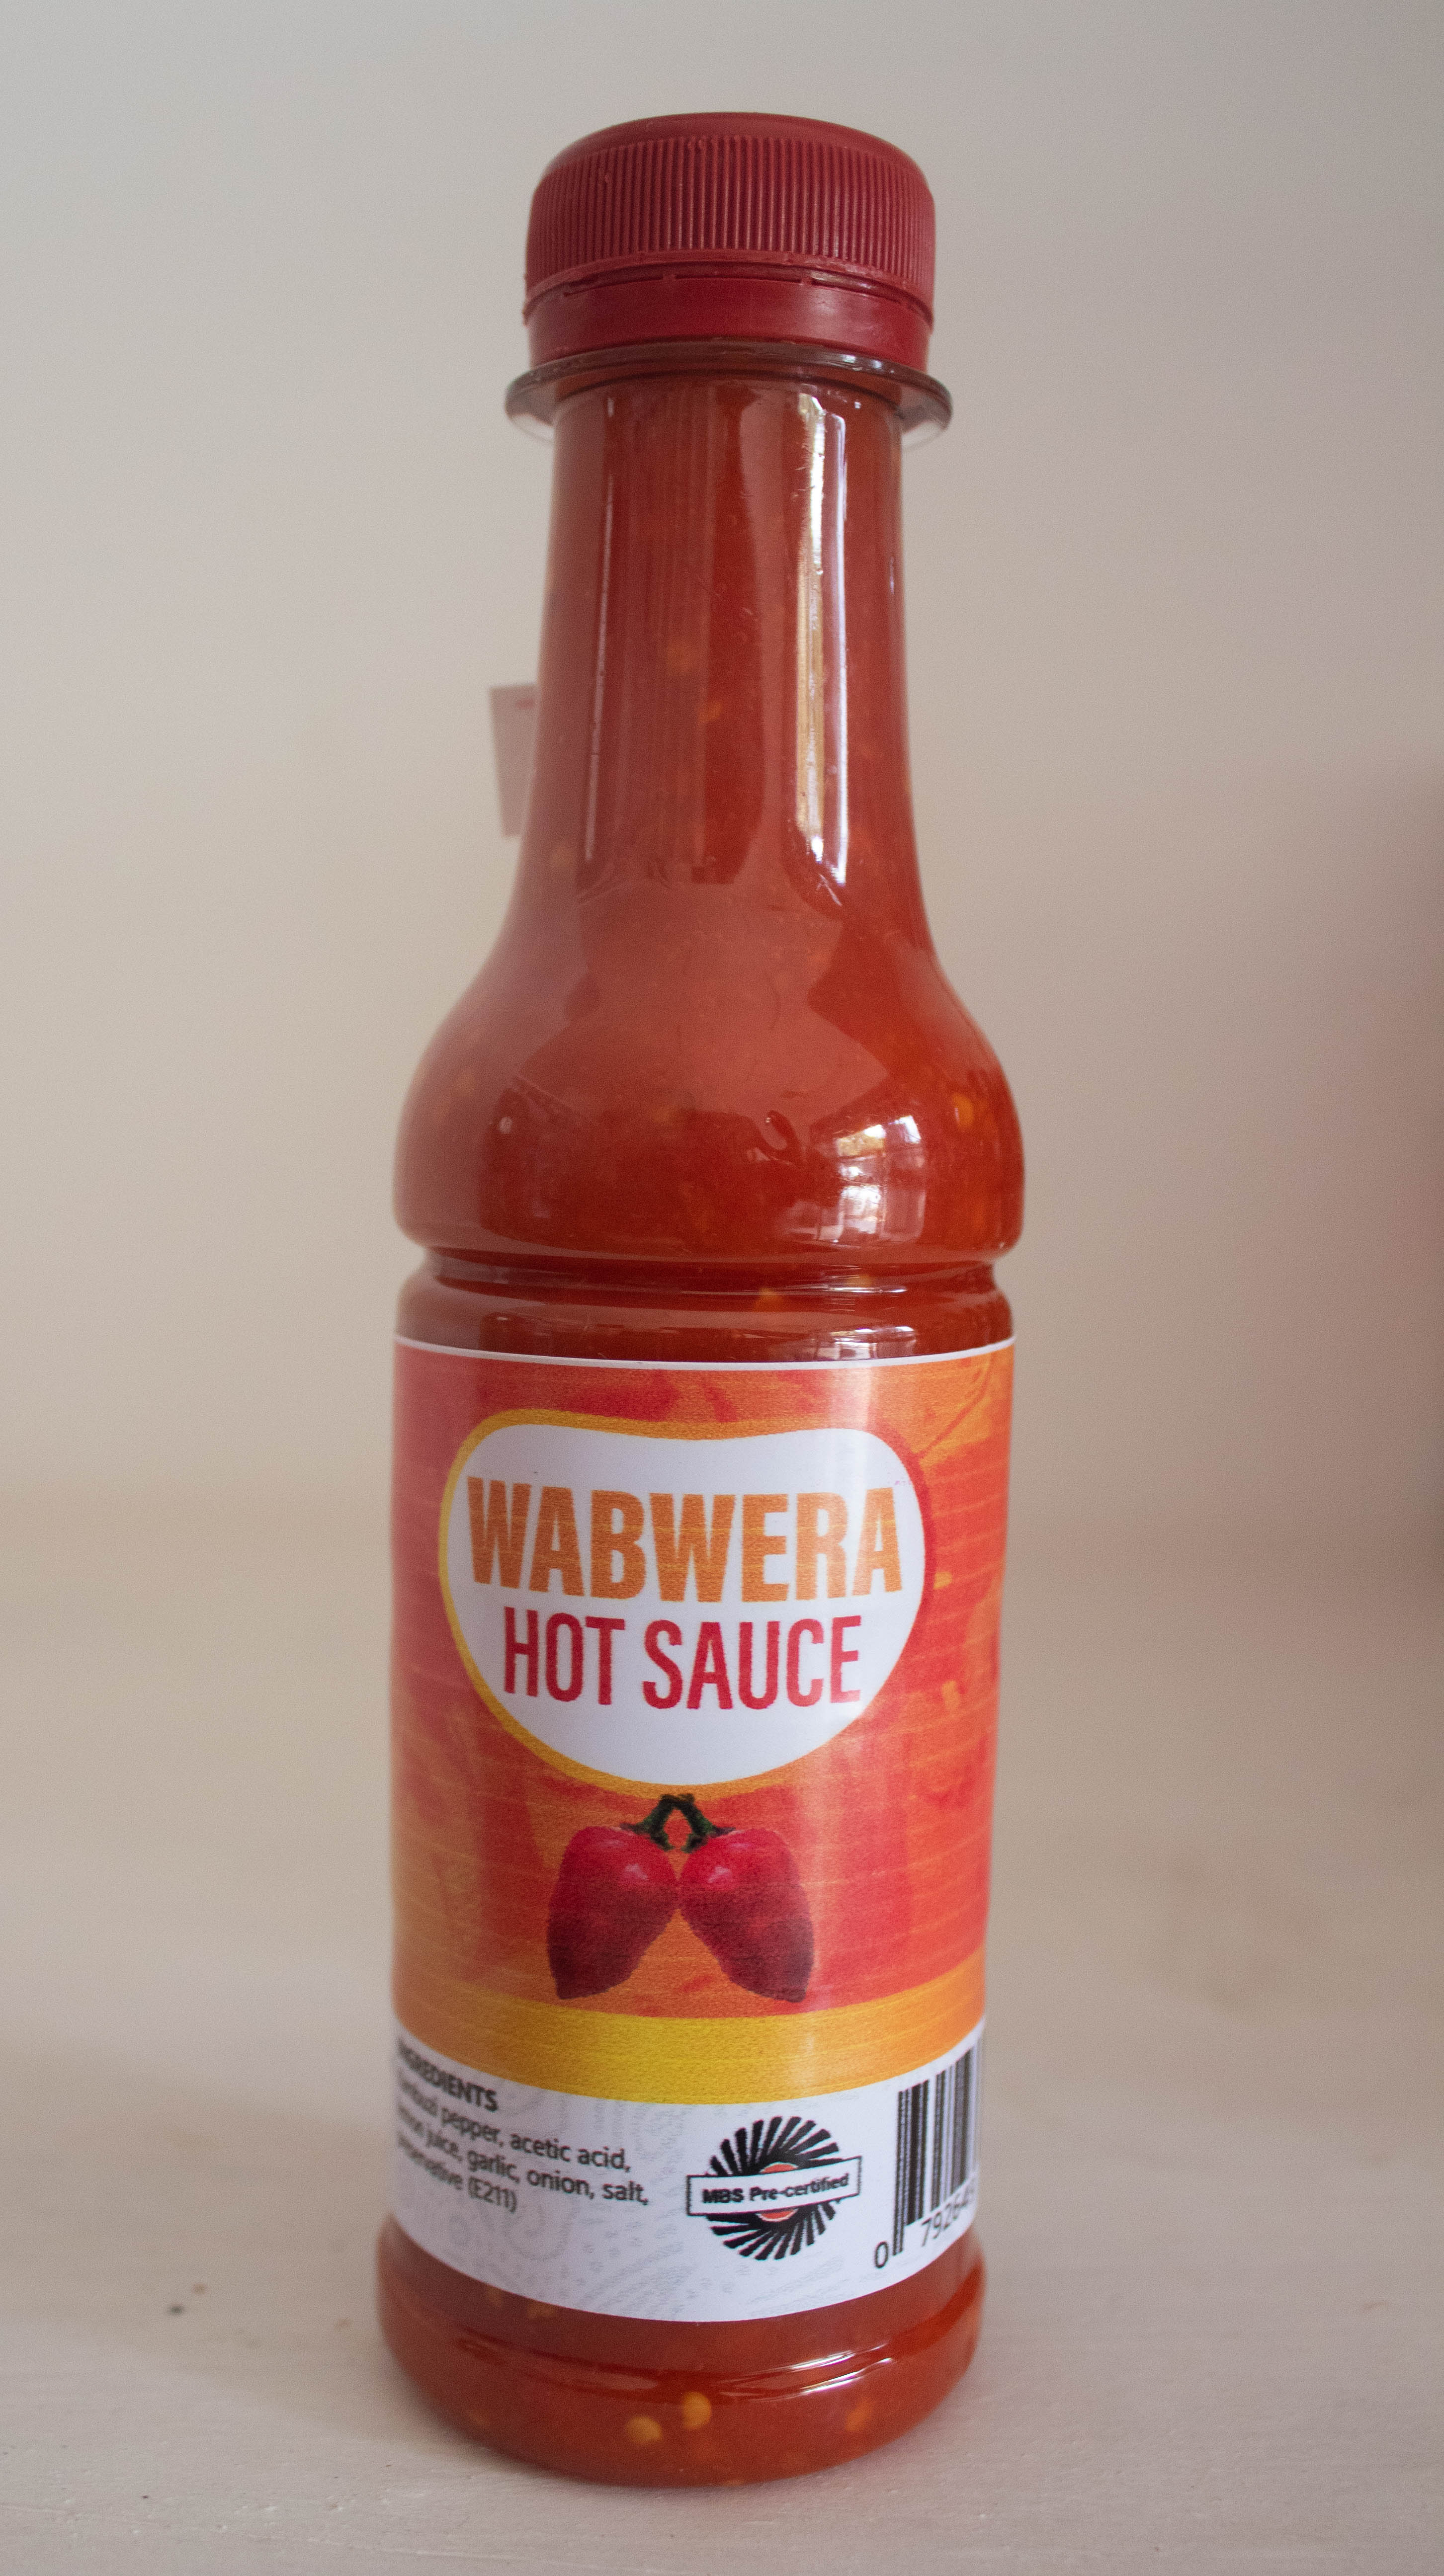 Wabwera-hot Sauce